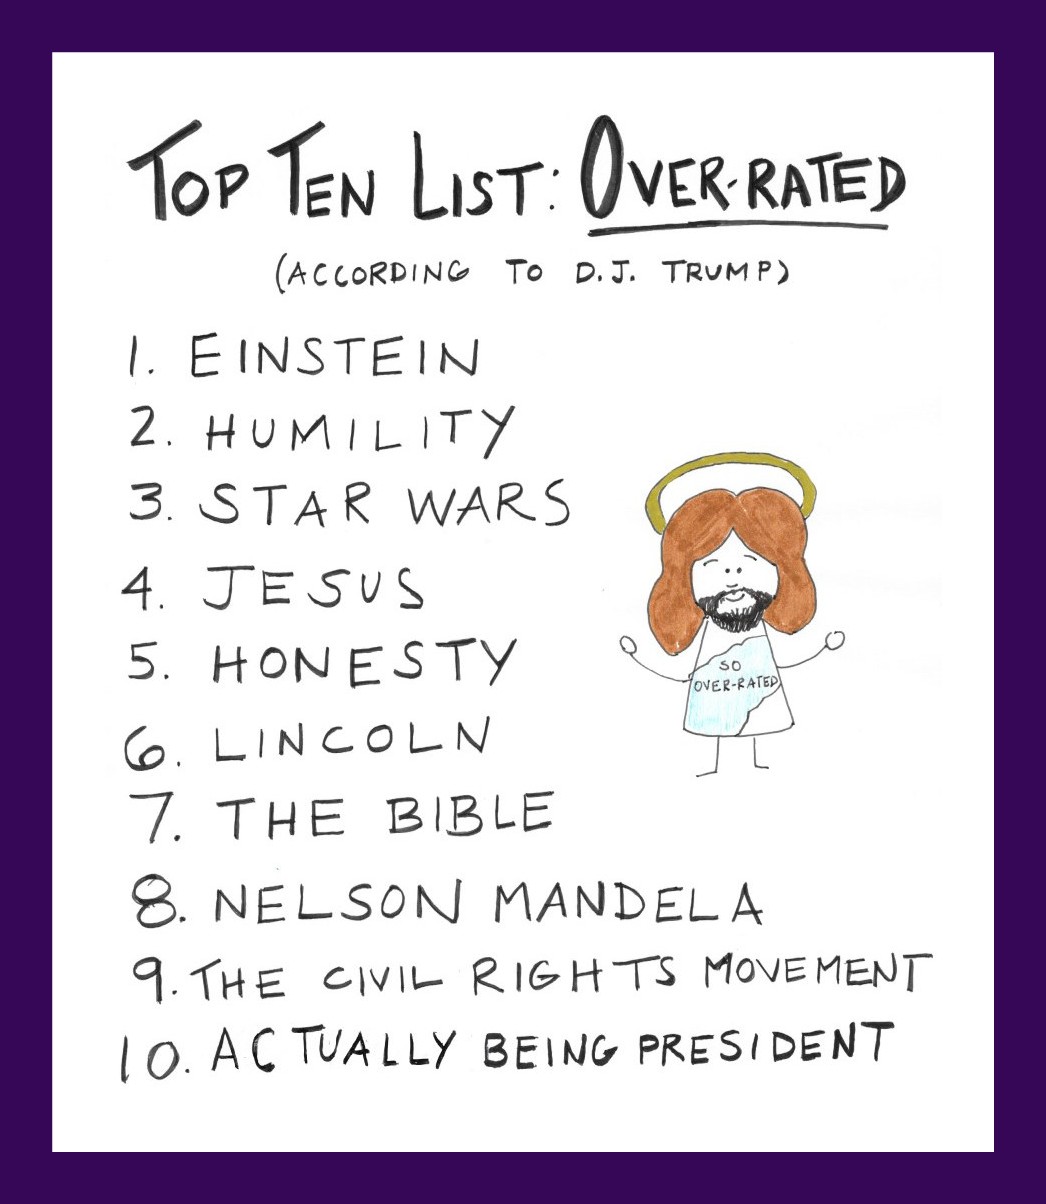 Top Ten List Overrated